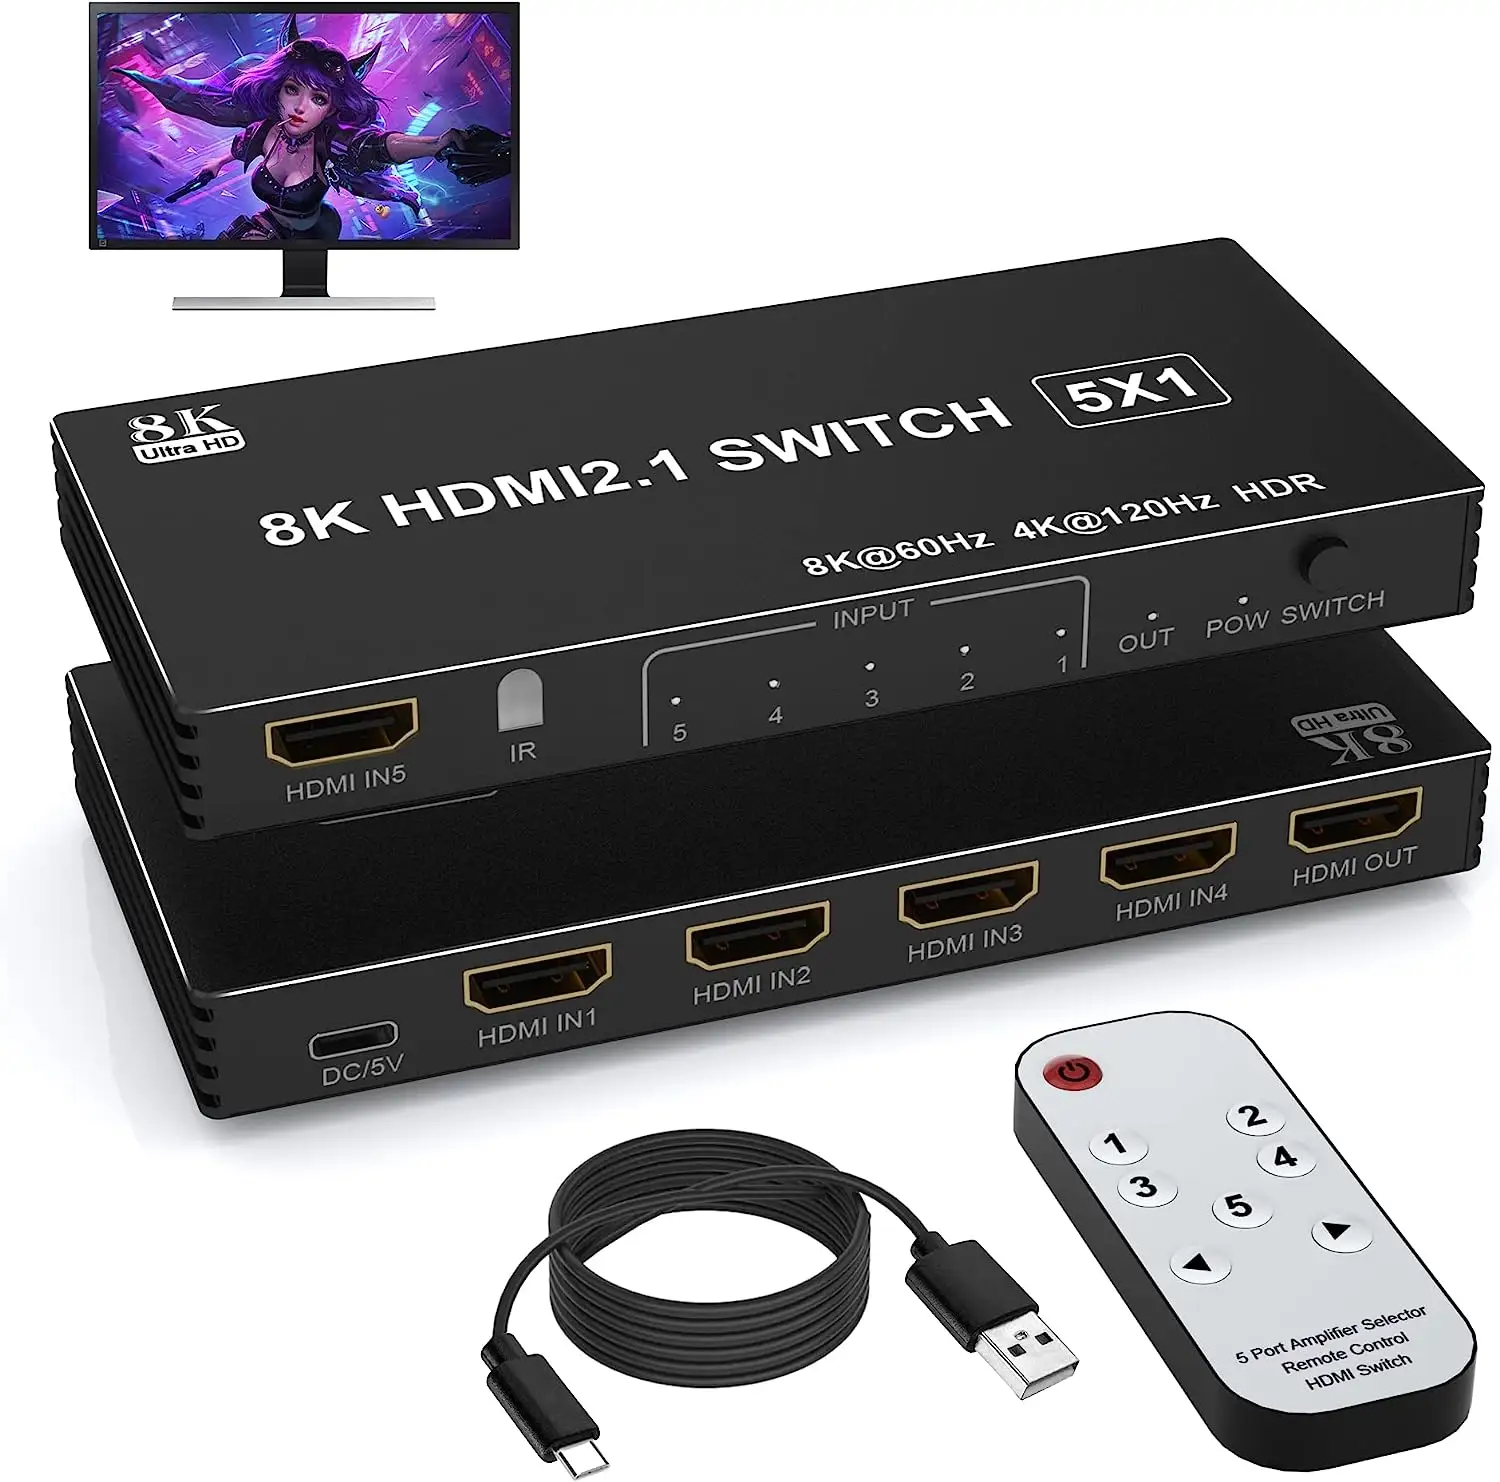 محول HDMI من Justlink فائق الدقة 8K منفذ HDMI2.1 5 في 1 مع جهاز تحديد ومفتاح تحكم عن بعد يعمل بالأشعة تحت الحمراء وHDTV و8K60Hz 4K120Hz لأجهزة Xbox PS4 PC TV